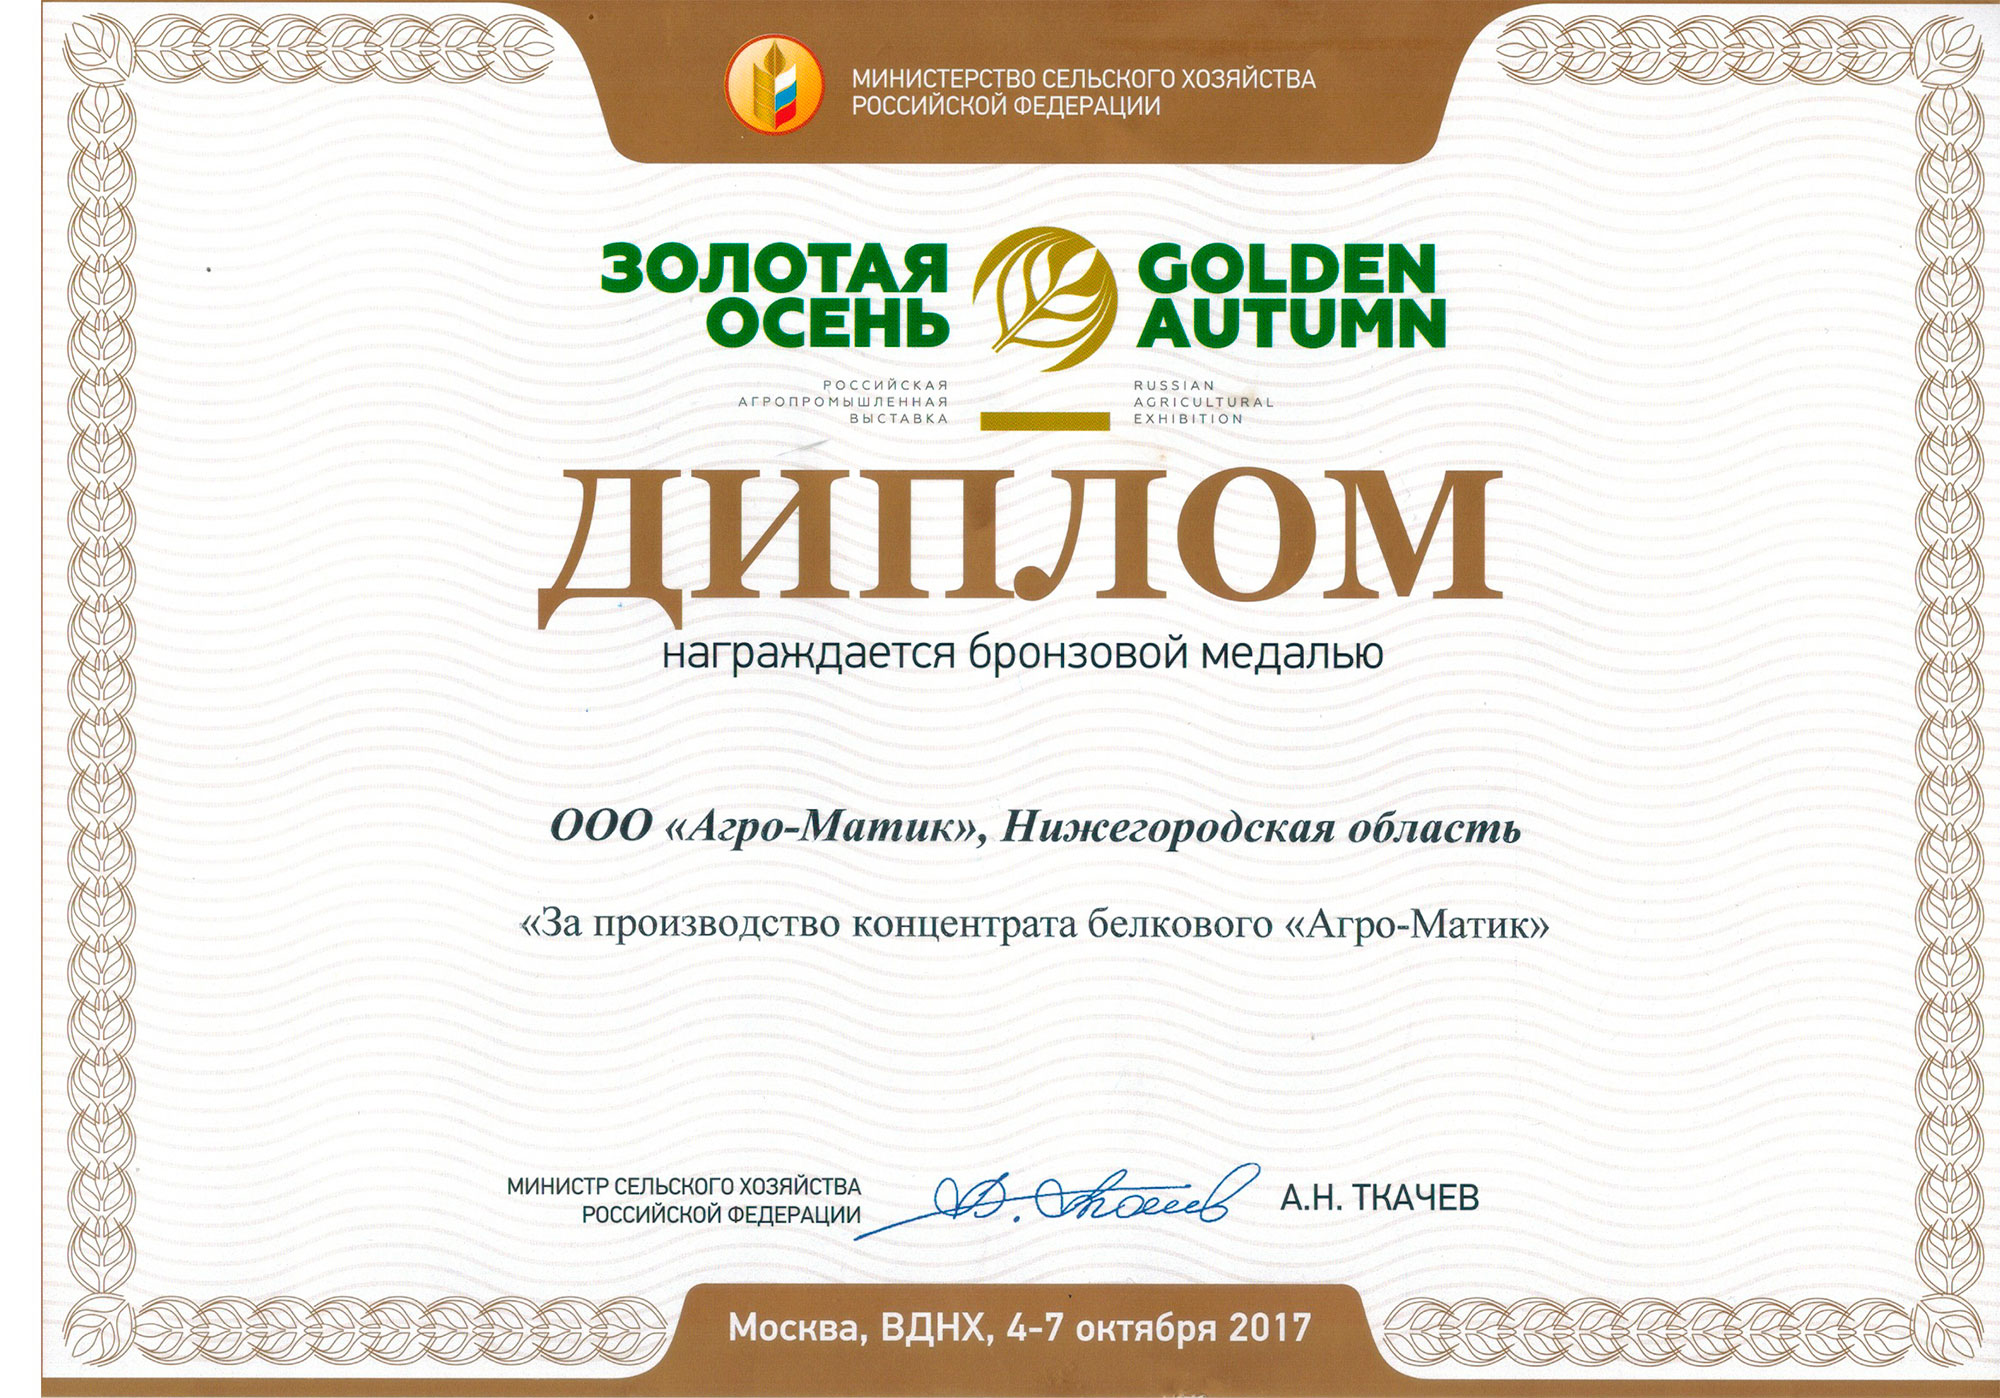 «Агро-Матик» удостоен сразу трех медалей выставки «Золотая осень — 2017» / Агро-Матик #4